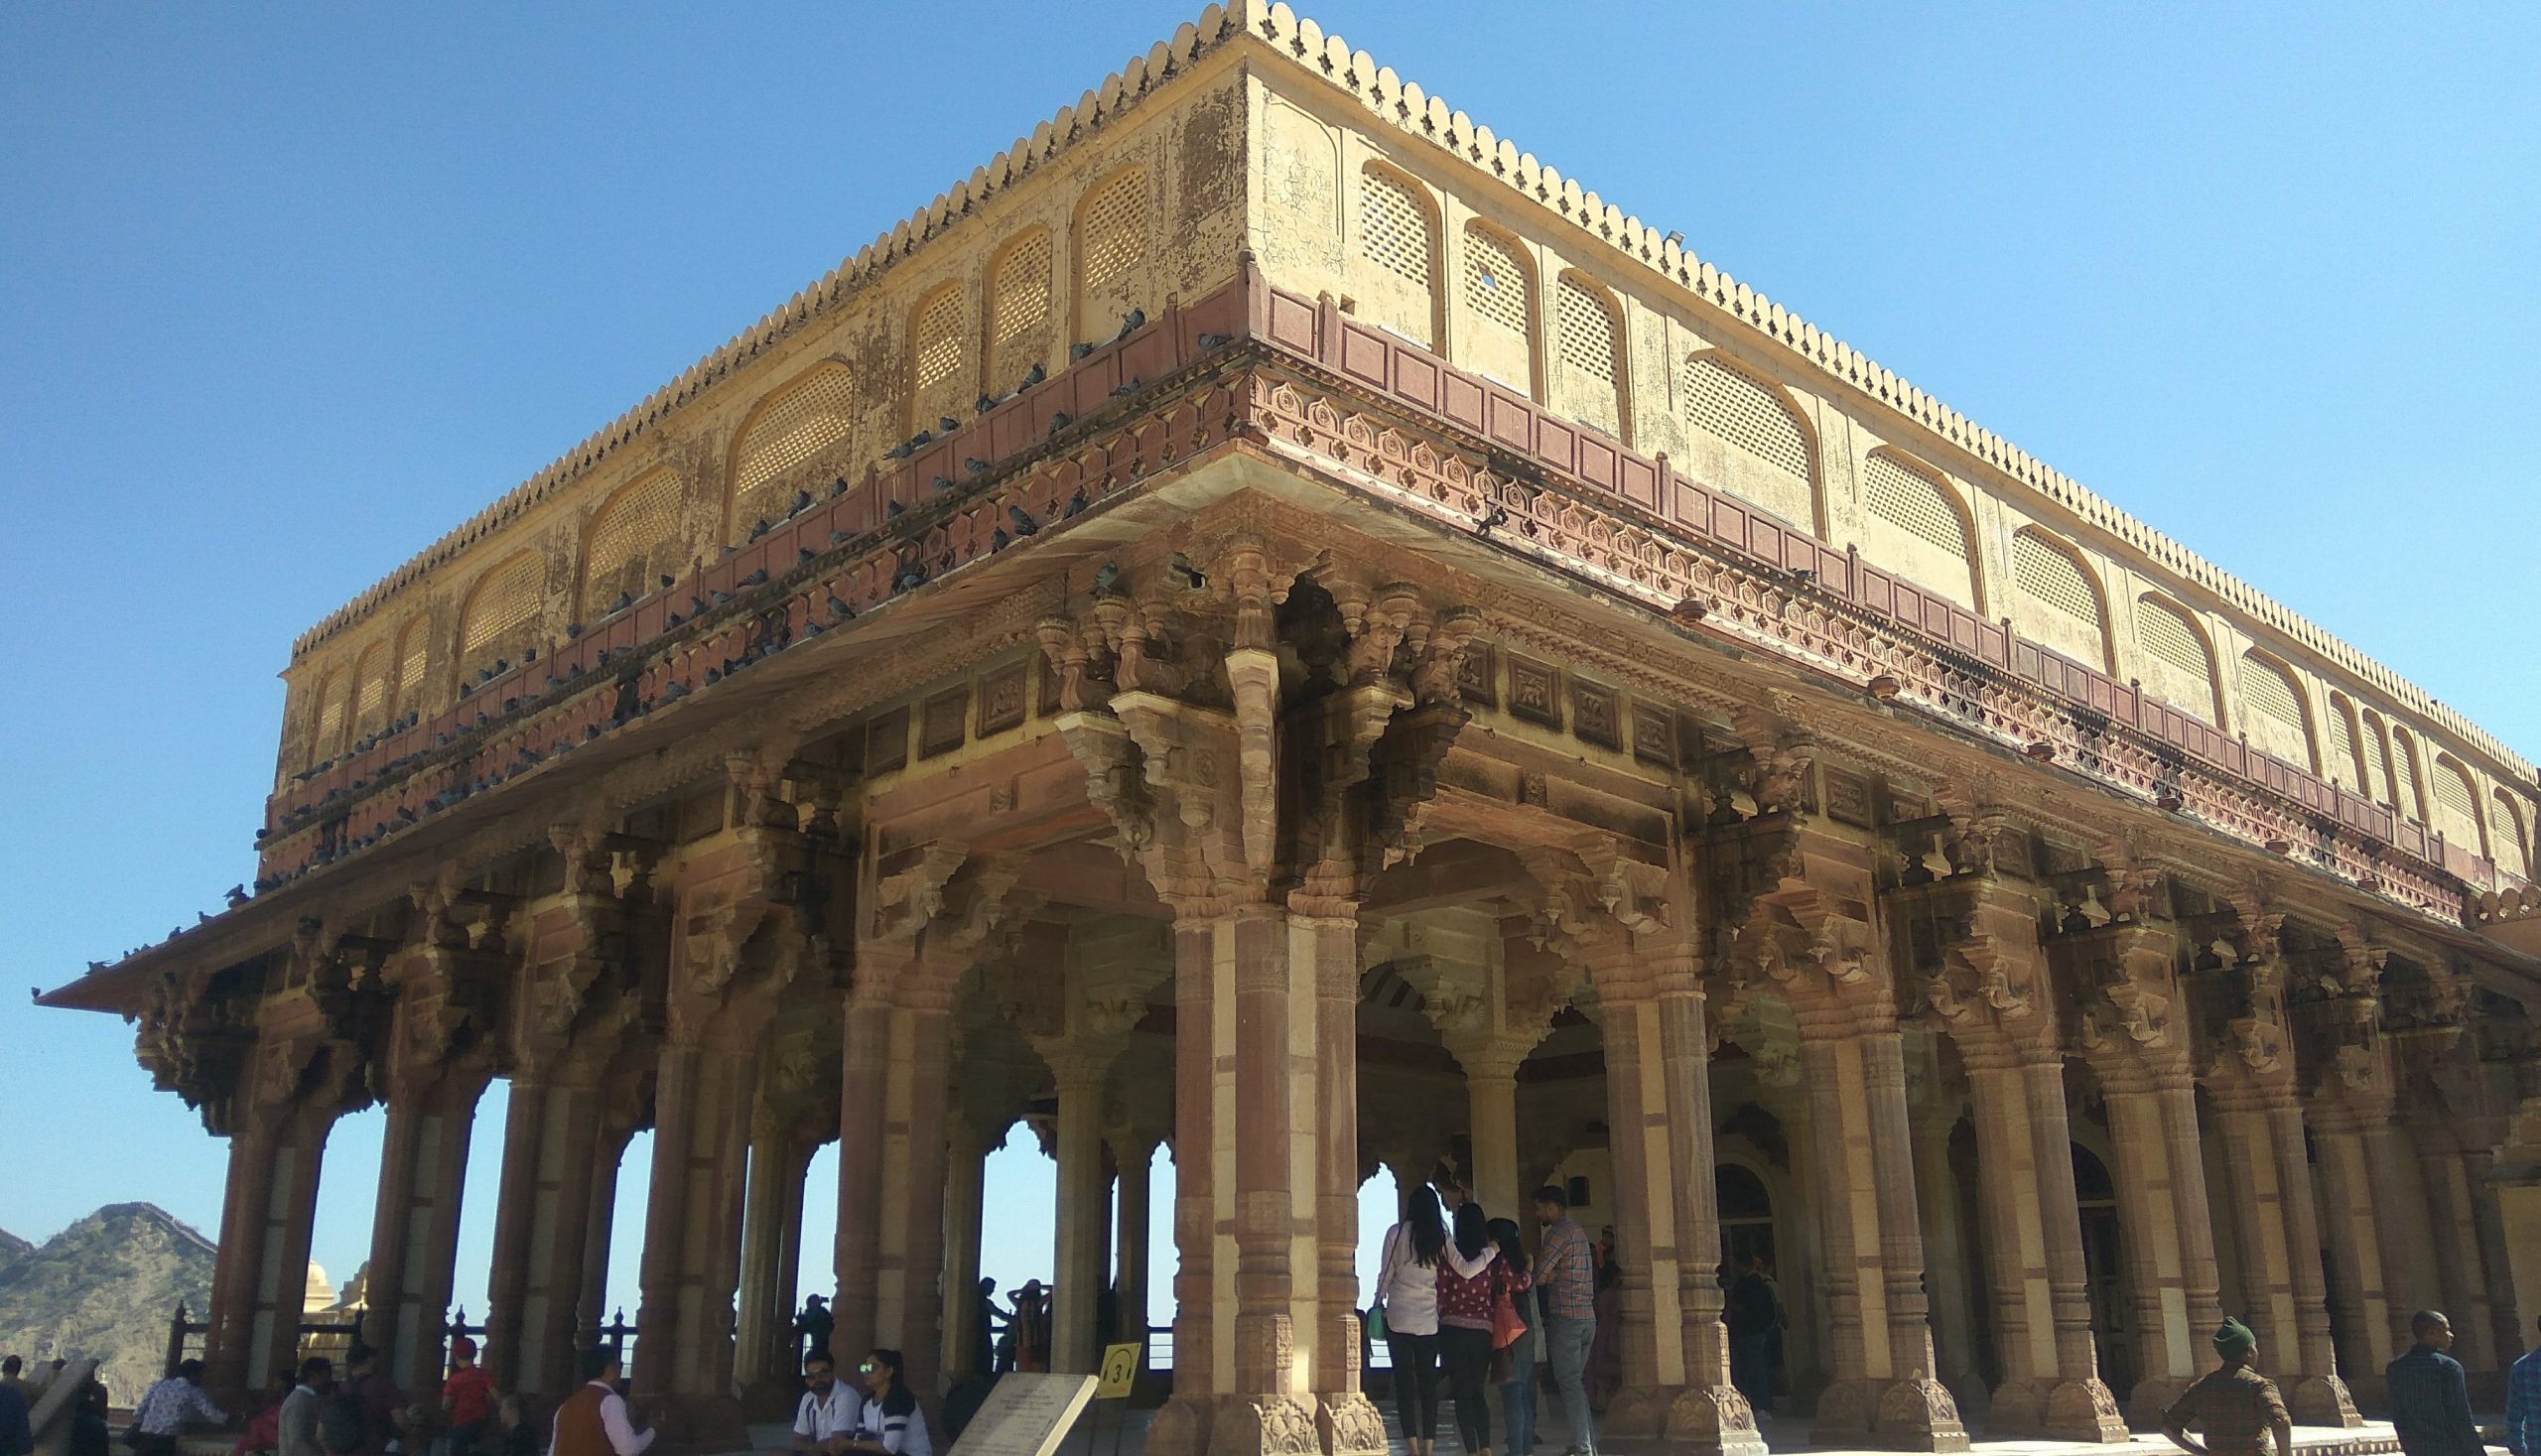 Amer Fort in Jaipur